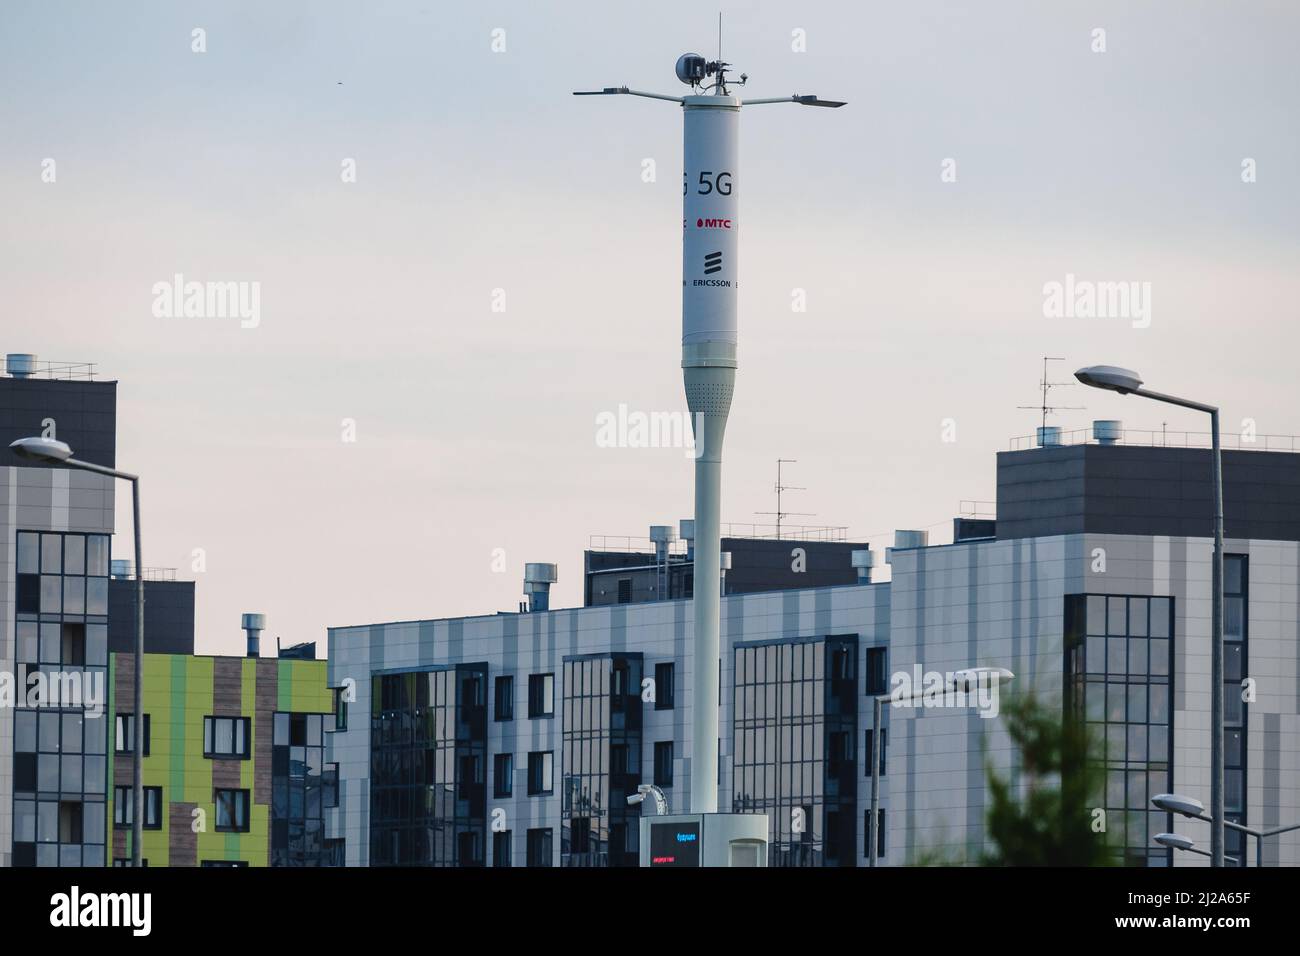 Telekommunikationsturm von 5G Zellen auf dem Hintergrund von Gebäuden. Antennensender Für Drahtlose Kommunikation. Stockfoto